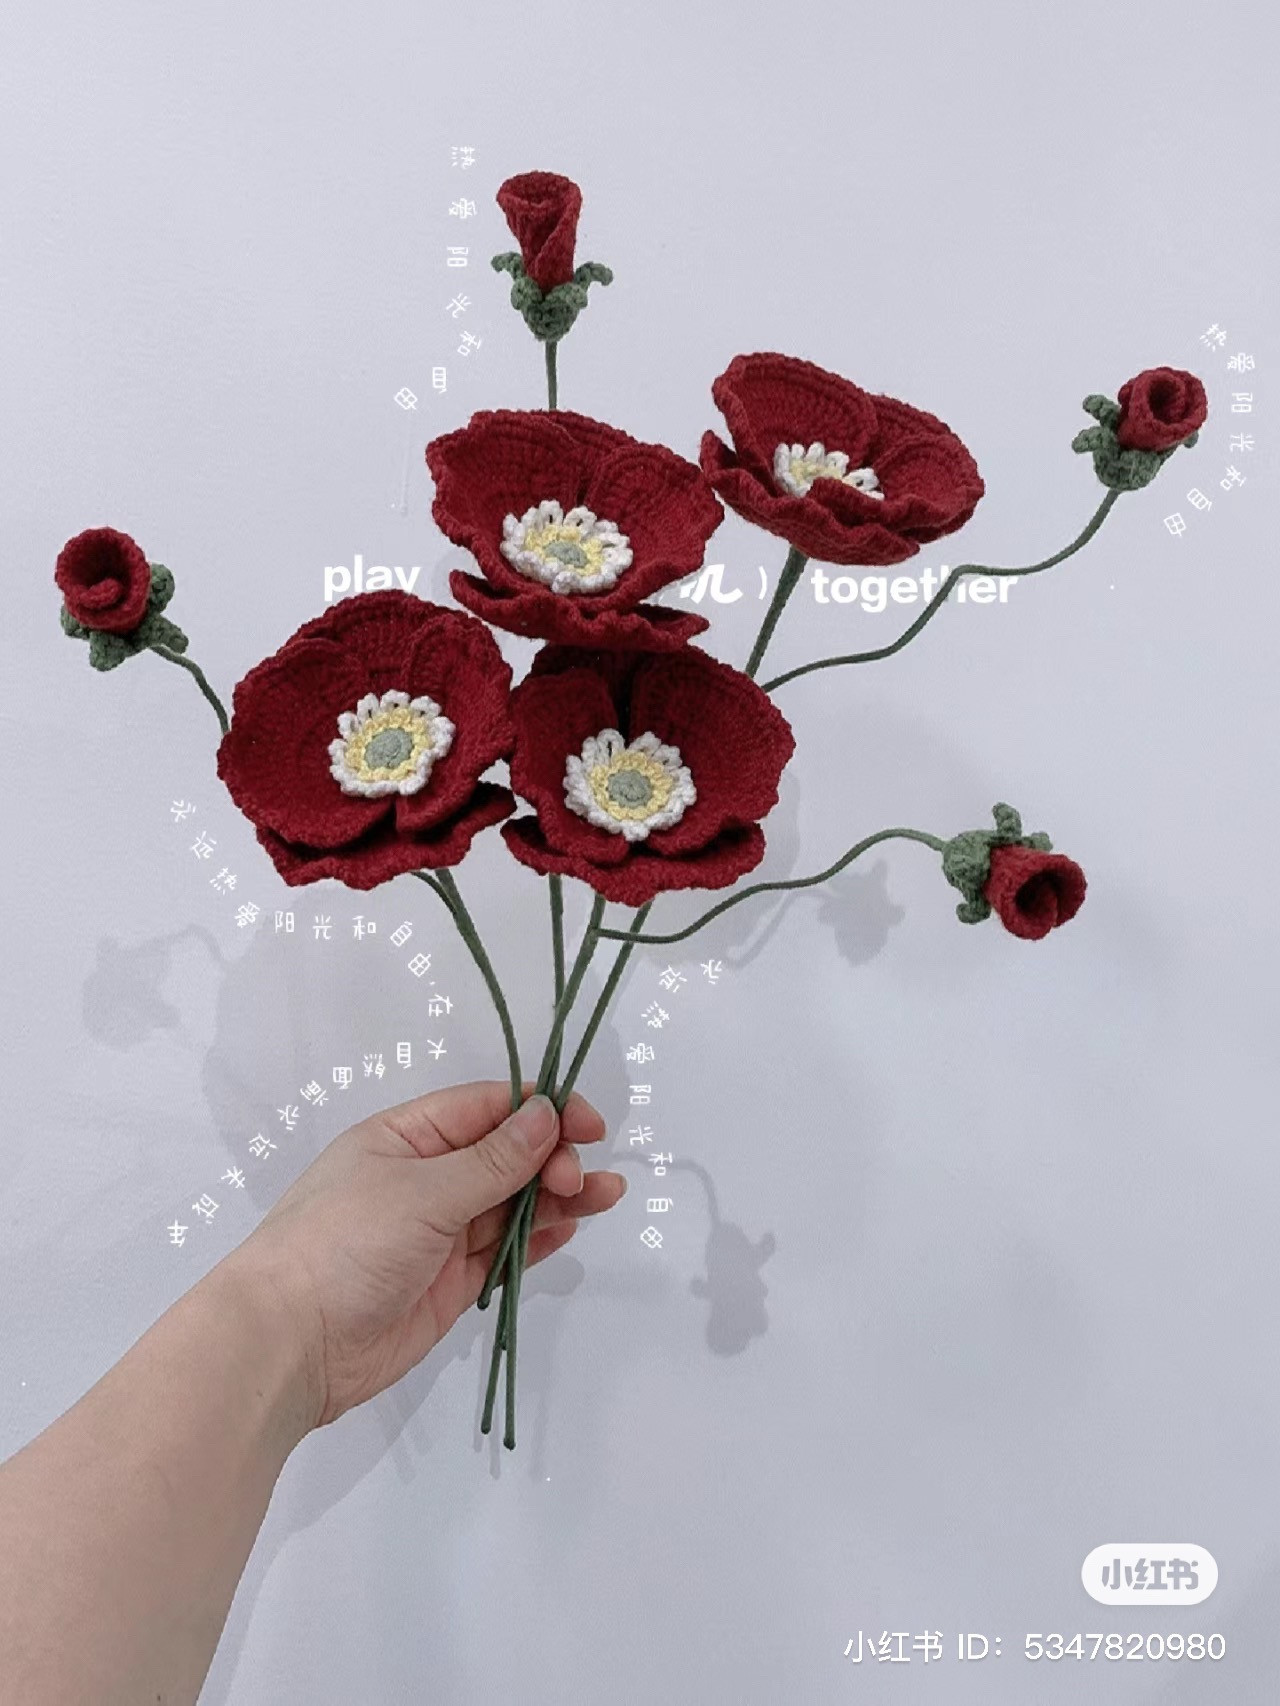 Poppy flower crochet pattern